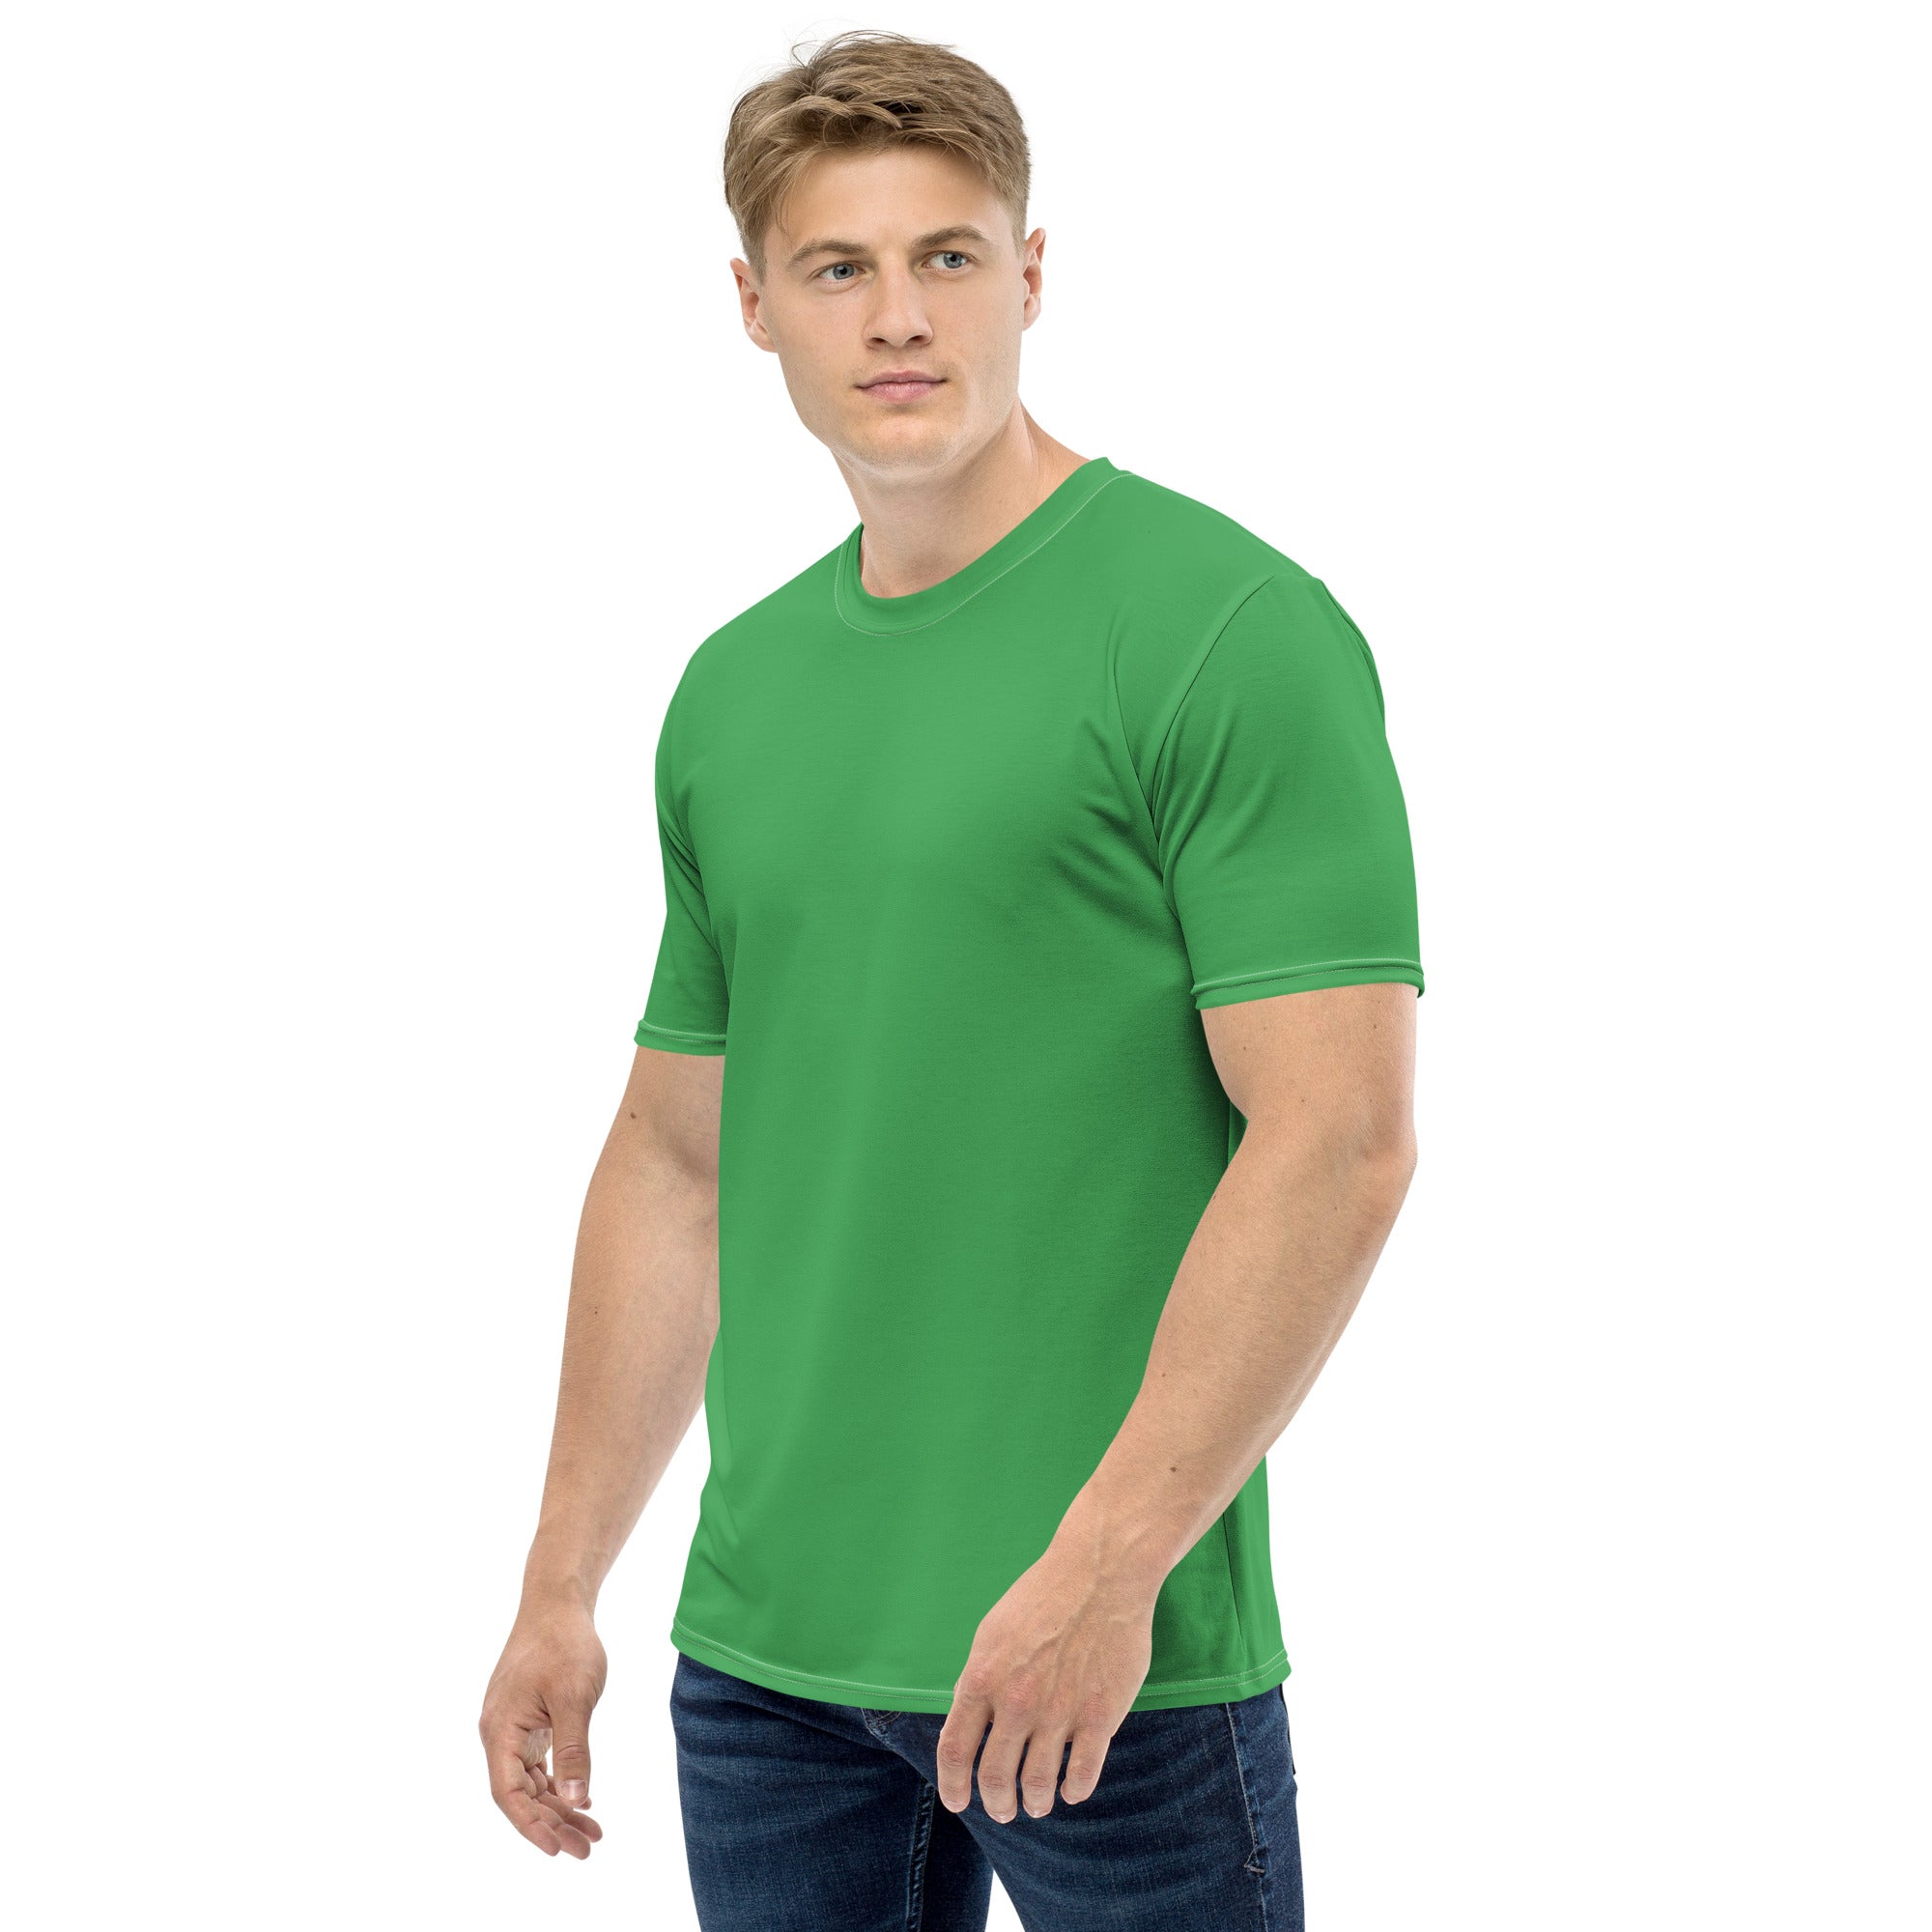 Clover Green Men's T-shirt